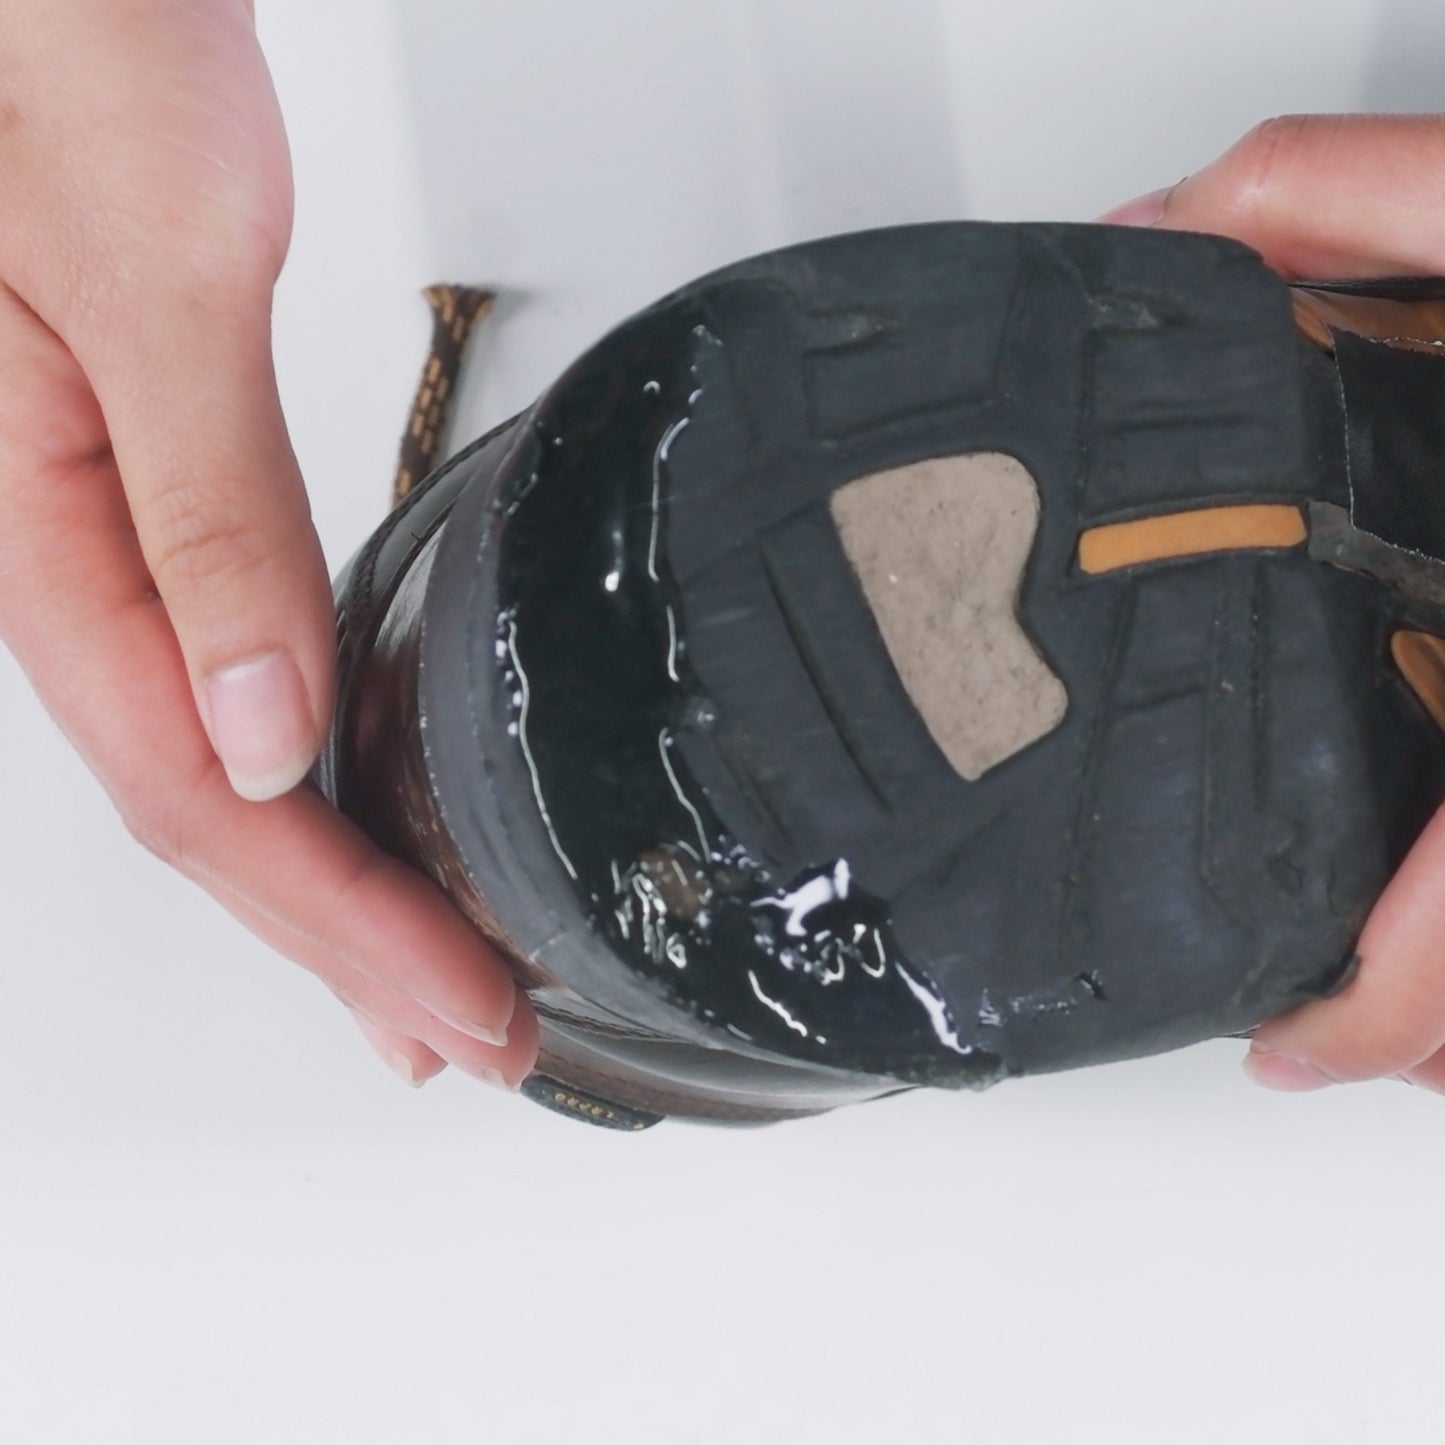 Aquasure SR Shoe Repair Adhesive